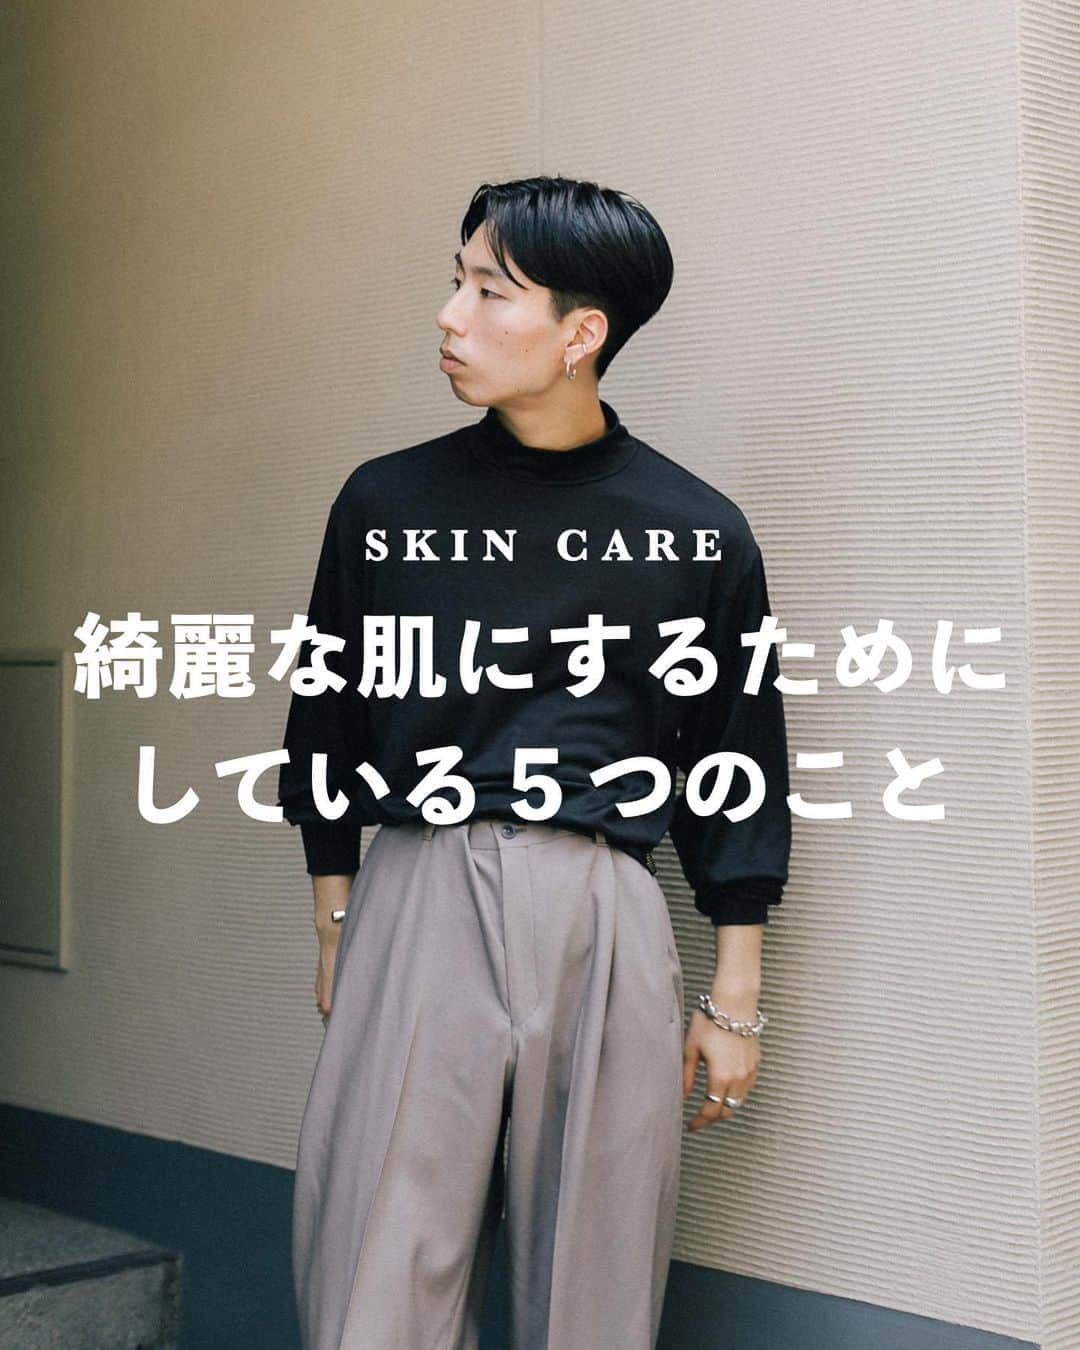 金山大成さんのインスタグラム写真 金山大成instagram ㅤㅤㅤㅤㅤㅤㅤㅤㅤㅤㅤㅤㅤ 綺麗な肌にするためにしている5つのこと ㅤㅤㅤㅤㅤㅤㅤㅤㅤㅤ ㅤㅤㅤㅤㅤㅤㅤㅤㅤㅤㅤㅤㅤ 本日もご覧頂き誠にありがとうございます ㅤㅤㅤㅤㅤㅤㅤㅤㅤㅤㅤㅤㅤ